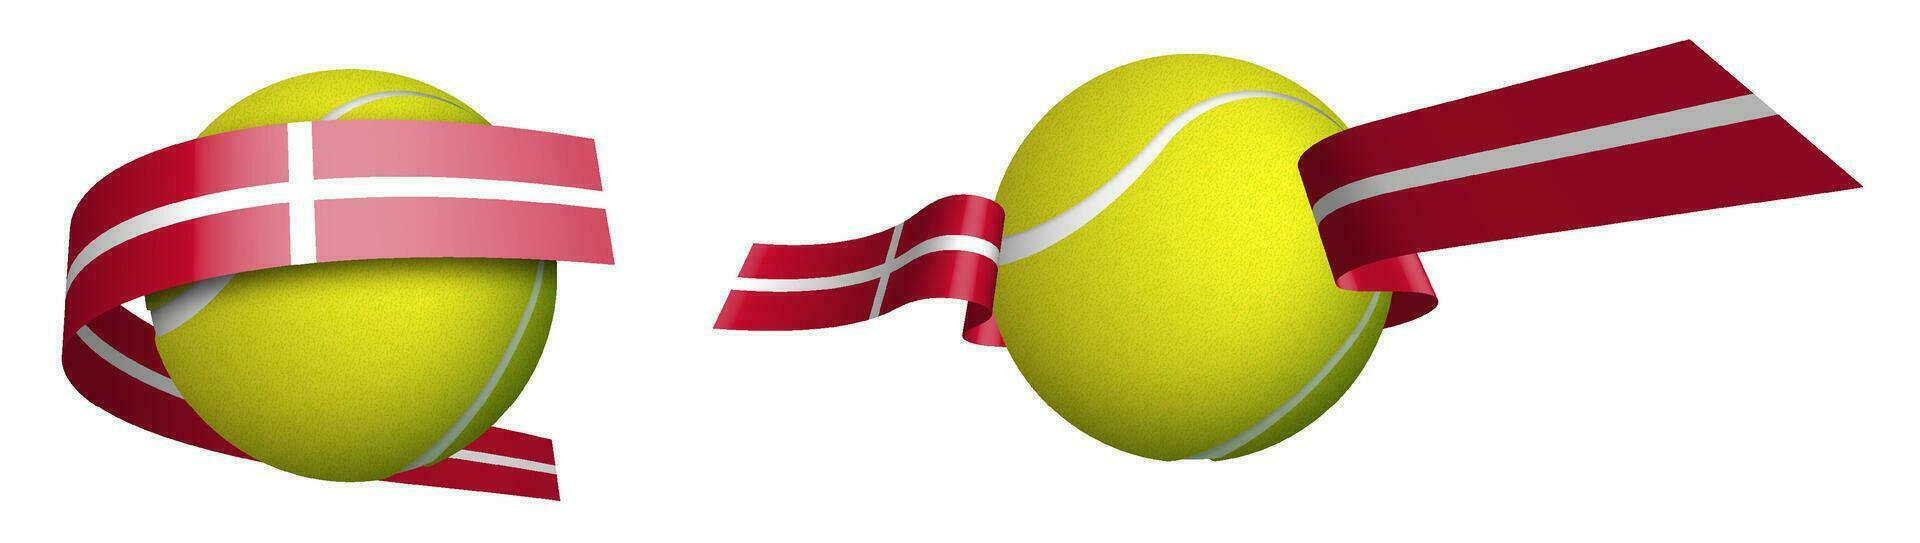 Deportes tenis pelota en cintas con colores de Dinamarca bandera. aislado vector en blanco antecedentes